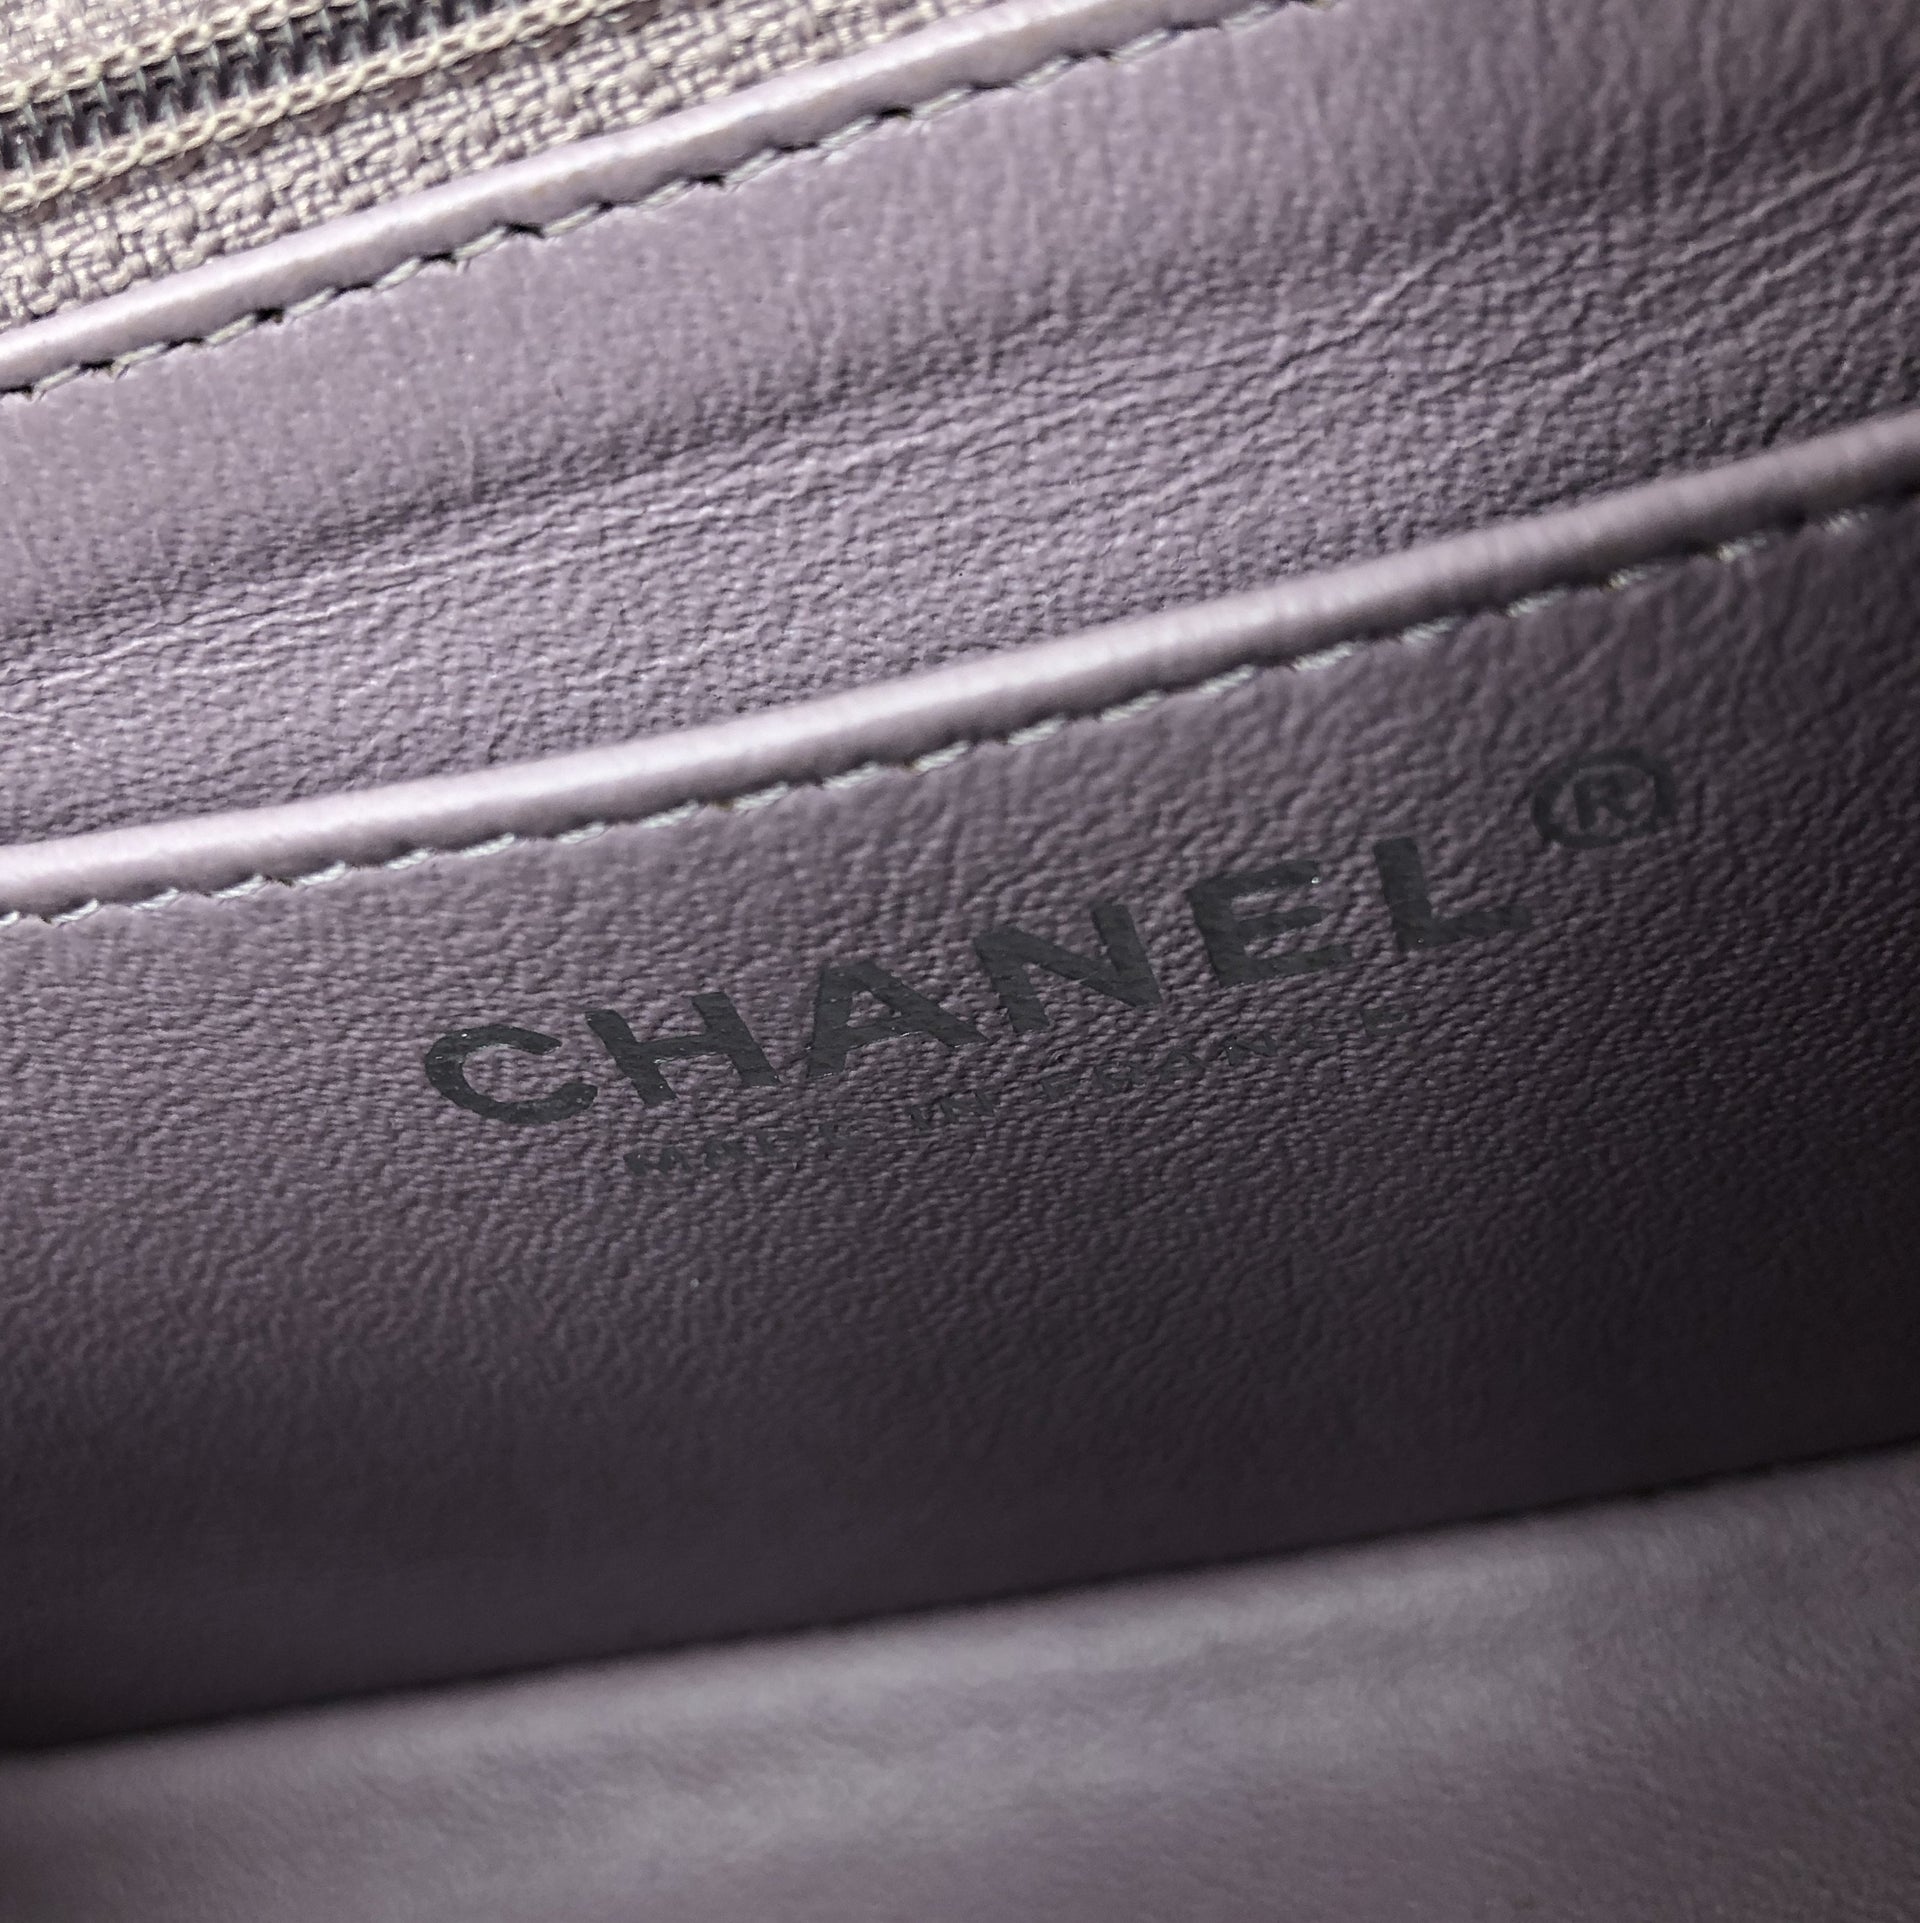 Chanel Classic Flap Mini Lambskin Light Purple